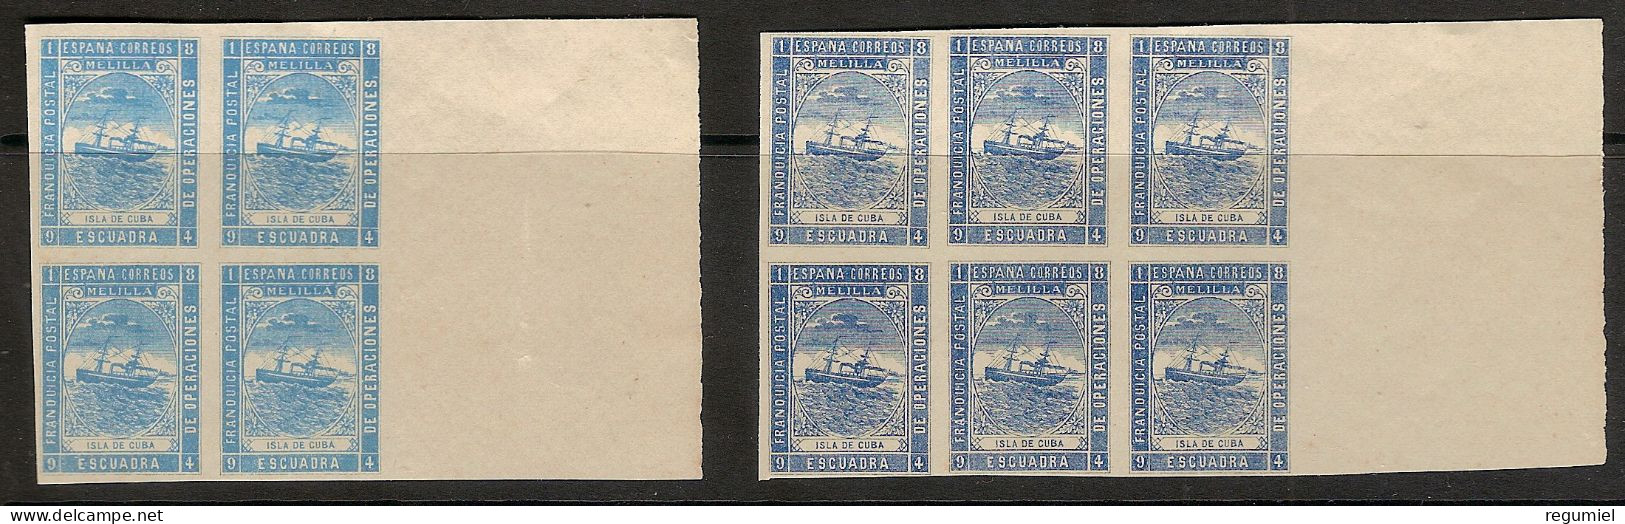 Franquicia Militar Melilla 07s (*)  Marina De Guerra. 1894. Bloques Variedad De Color - Military Service Stamp